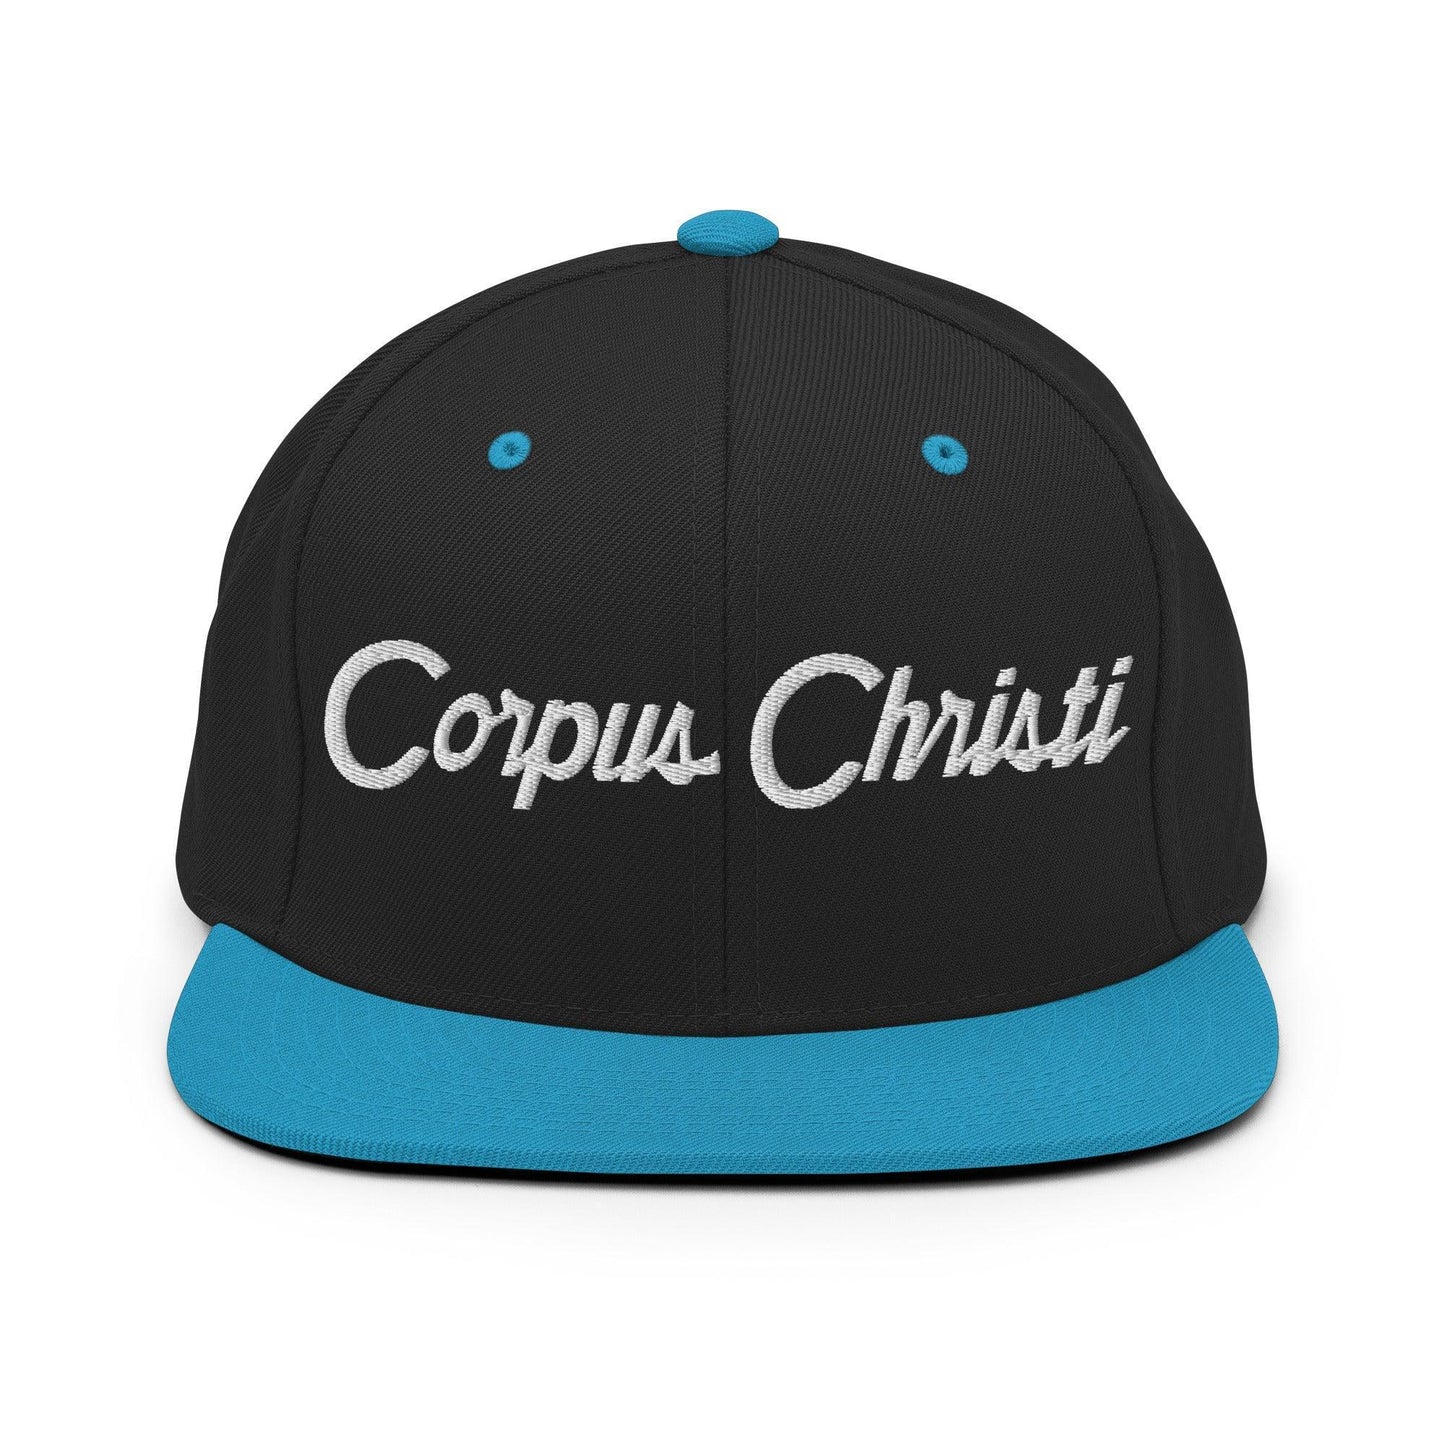 Corpus Christi Script Snapback Hat Black Teal